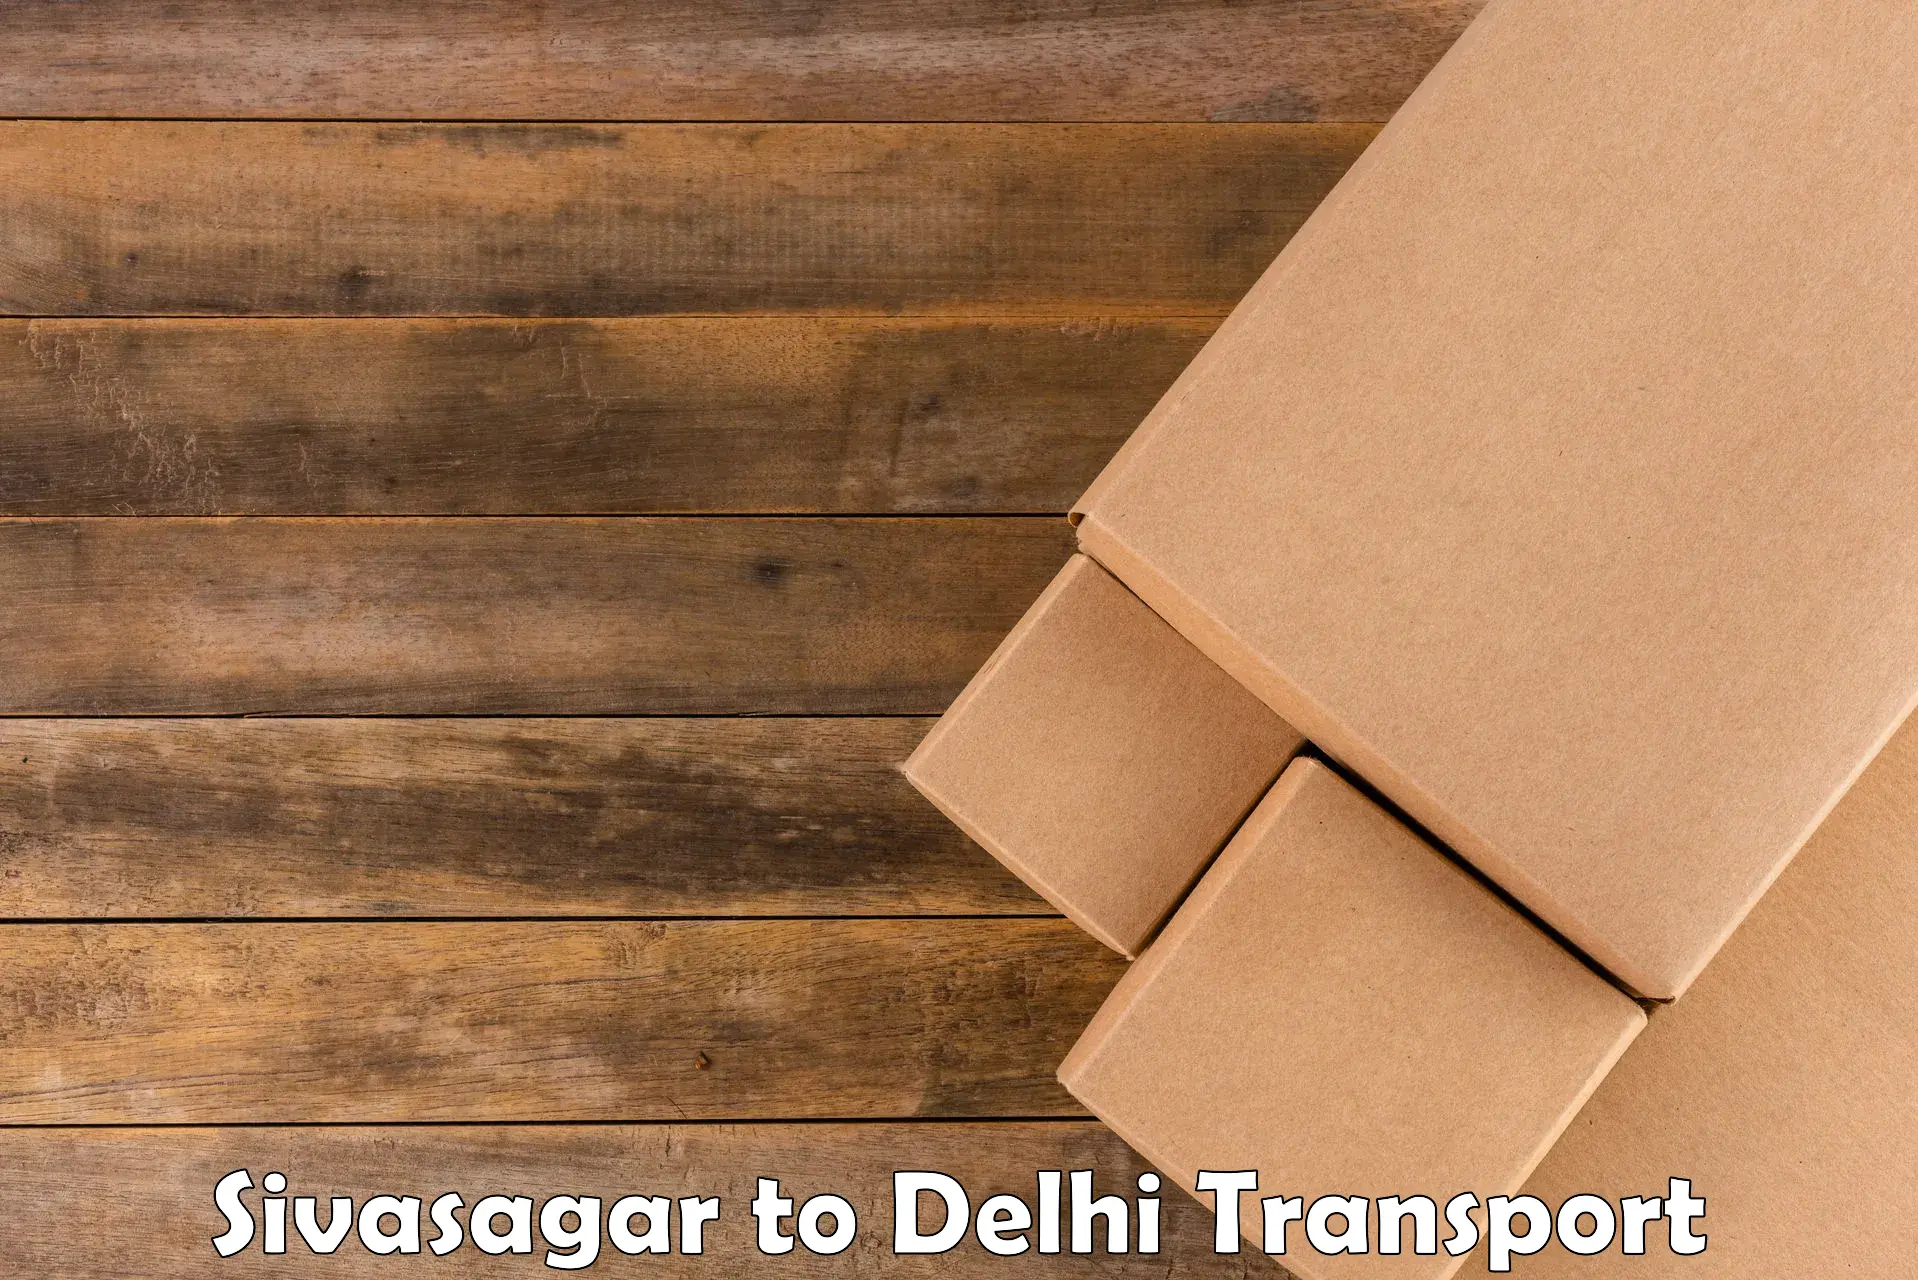 Inland transportation services Sivasagar to Delhi